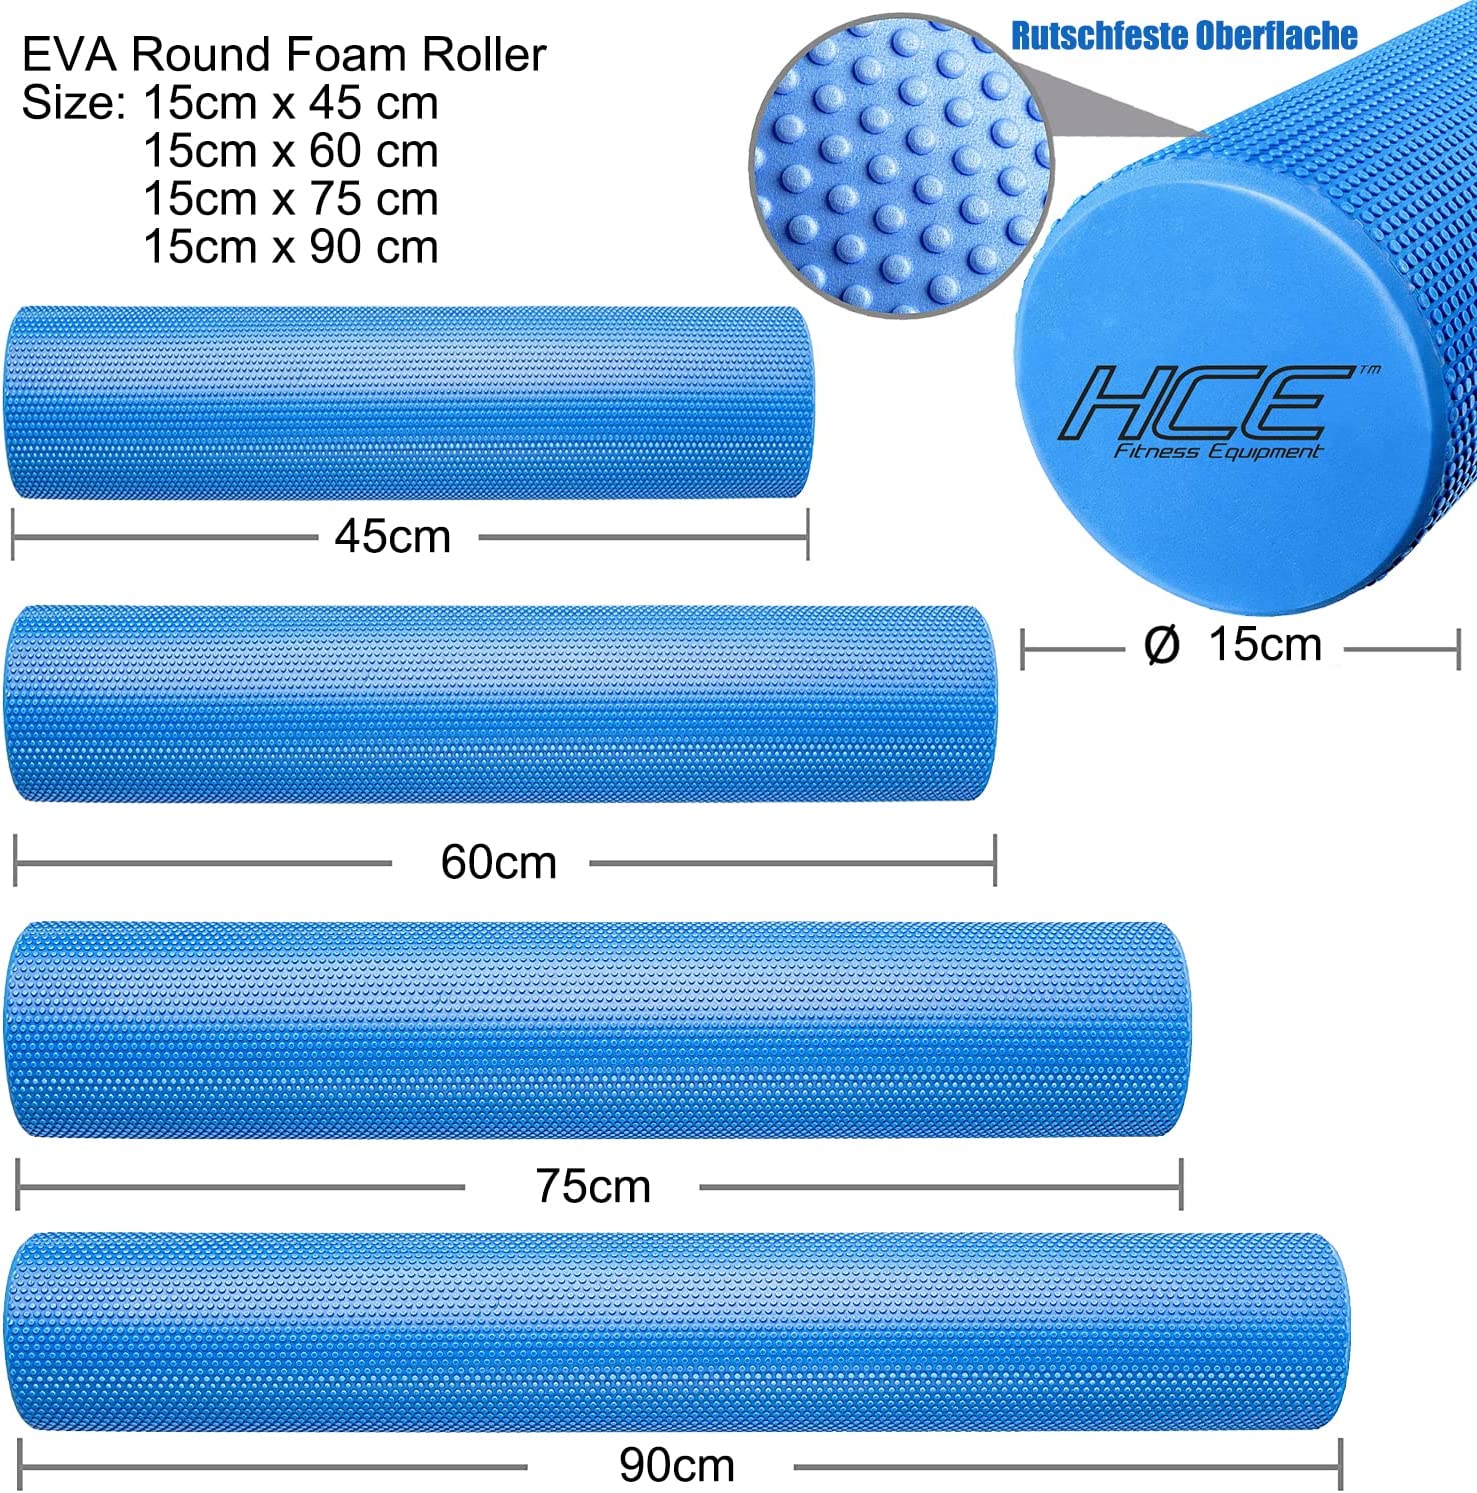 EVA Round Foam Roller 15cm x 60cm